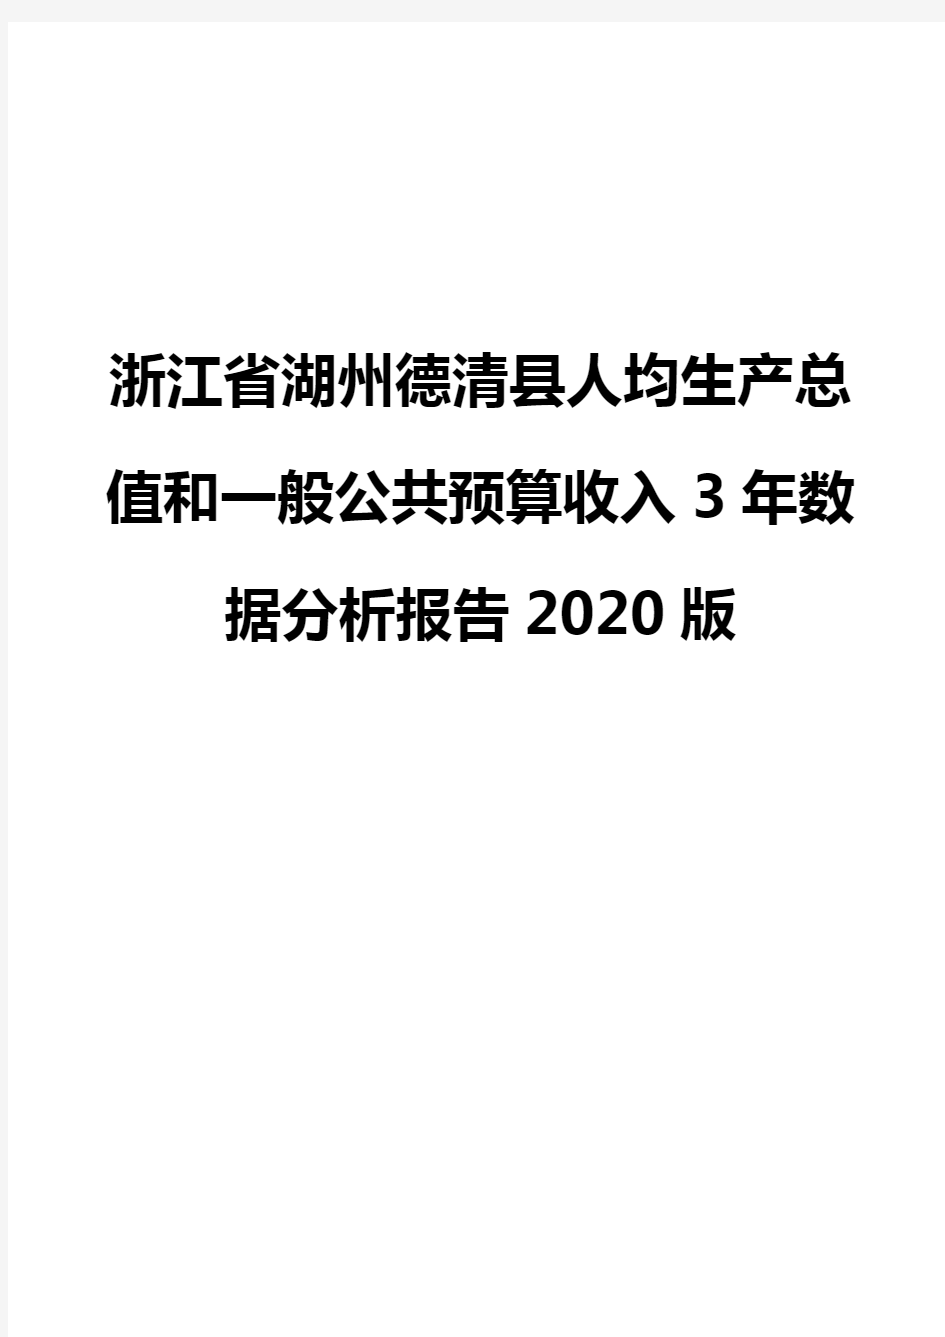 浙江省湖州德清县人均生产总值和一般公共预算收入3年数据分析报告2020版